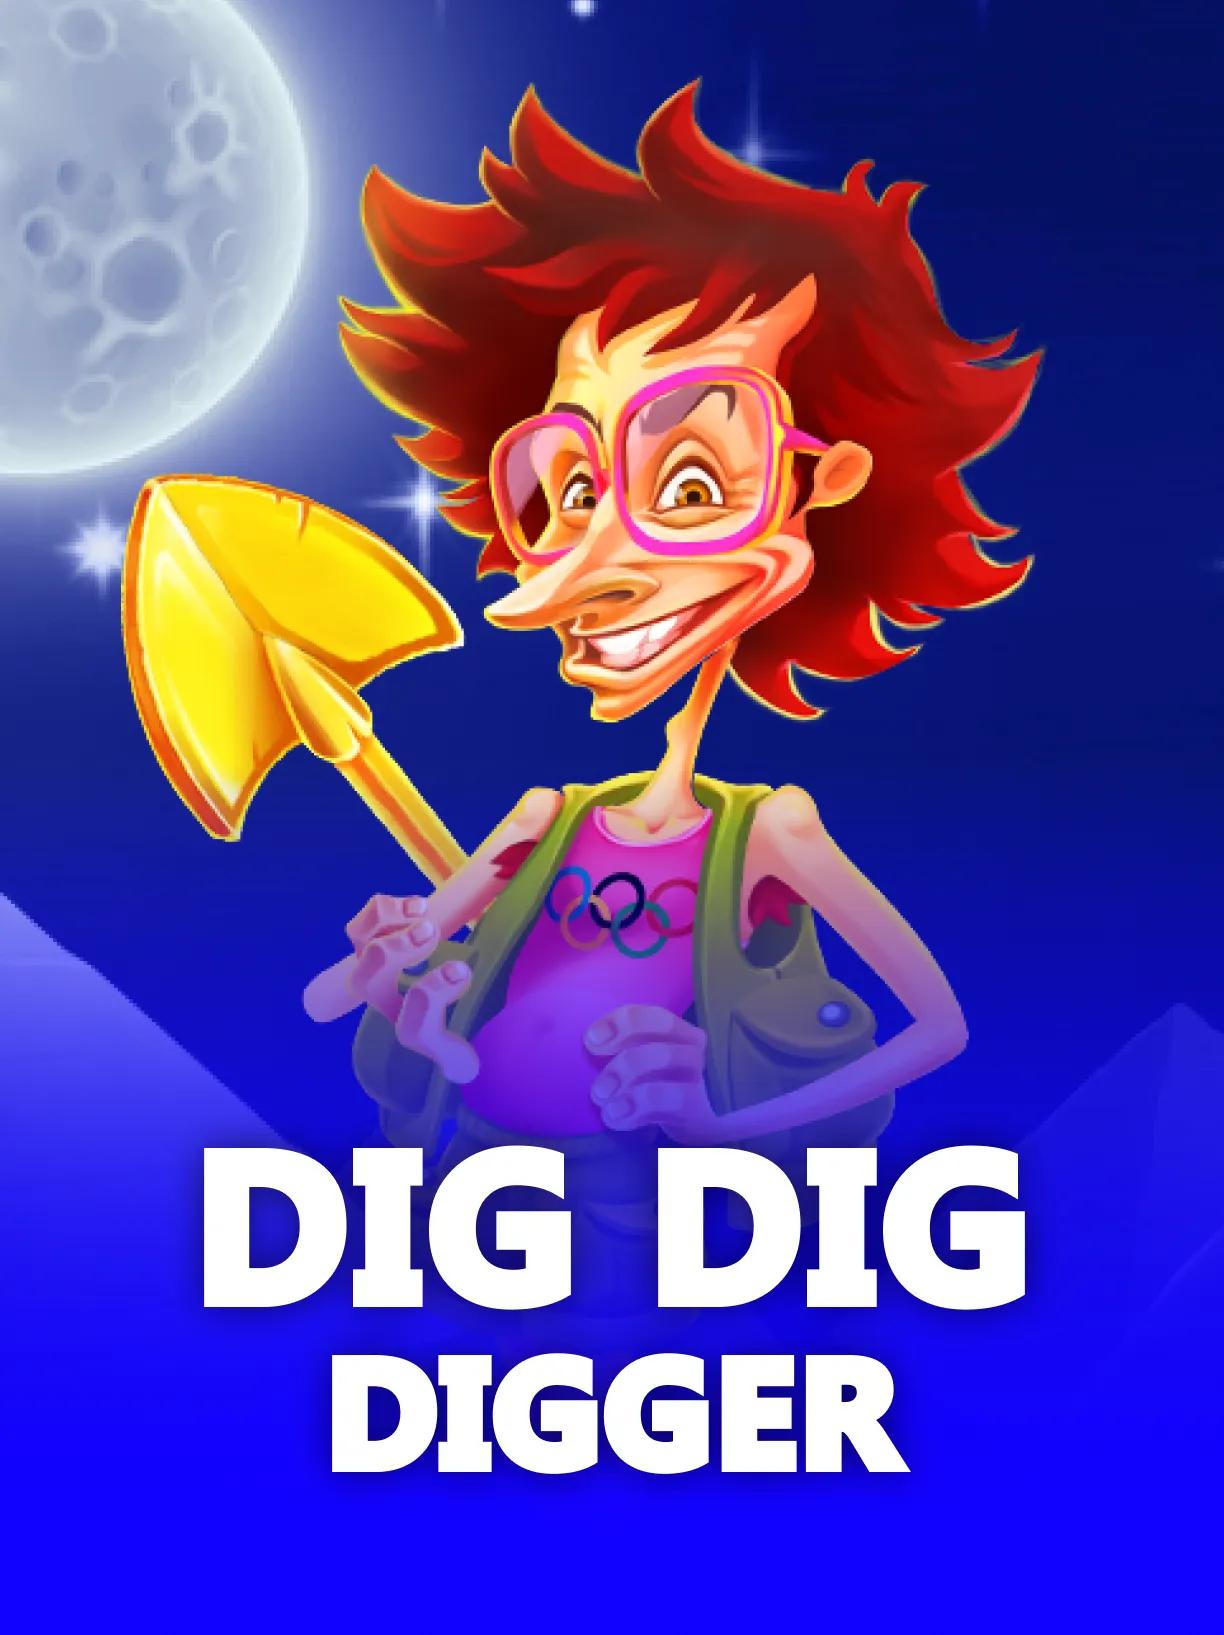 Dig_Dig_Digger_square.webp